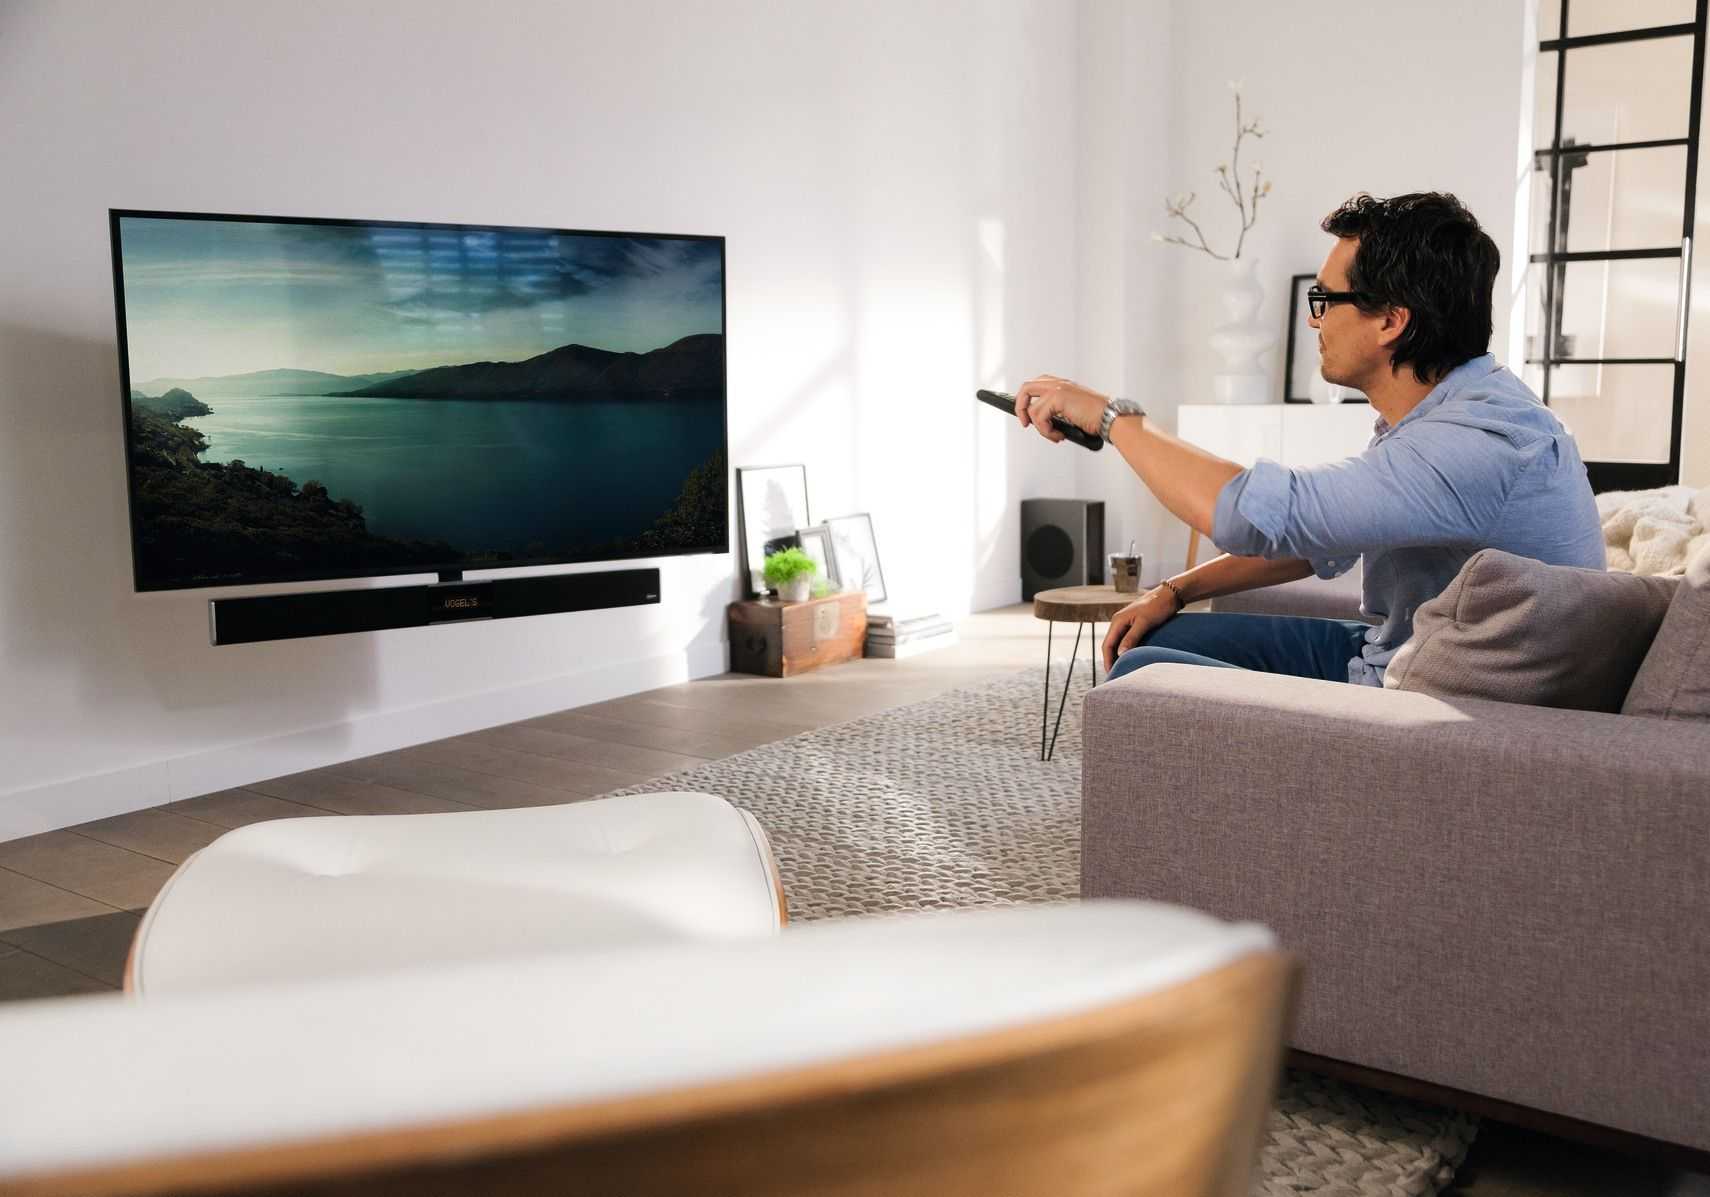 Лучшие марки телевизоров 2020 года для дома по качеству: рейтинг надежных фирм по отзывам специалистов